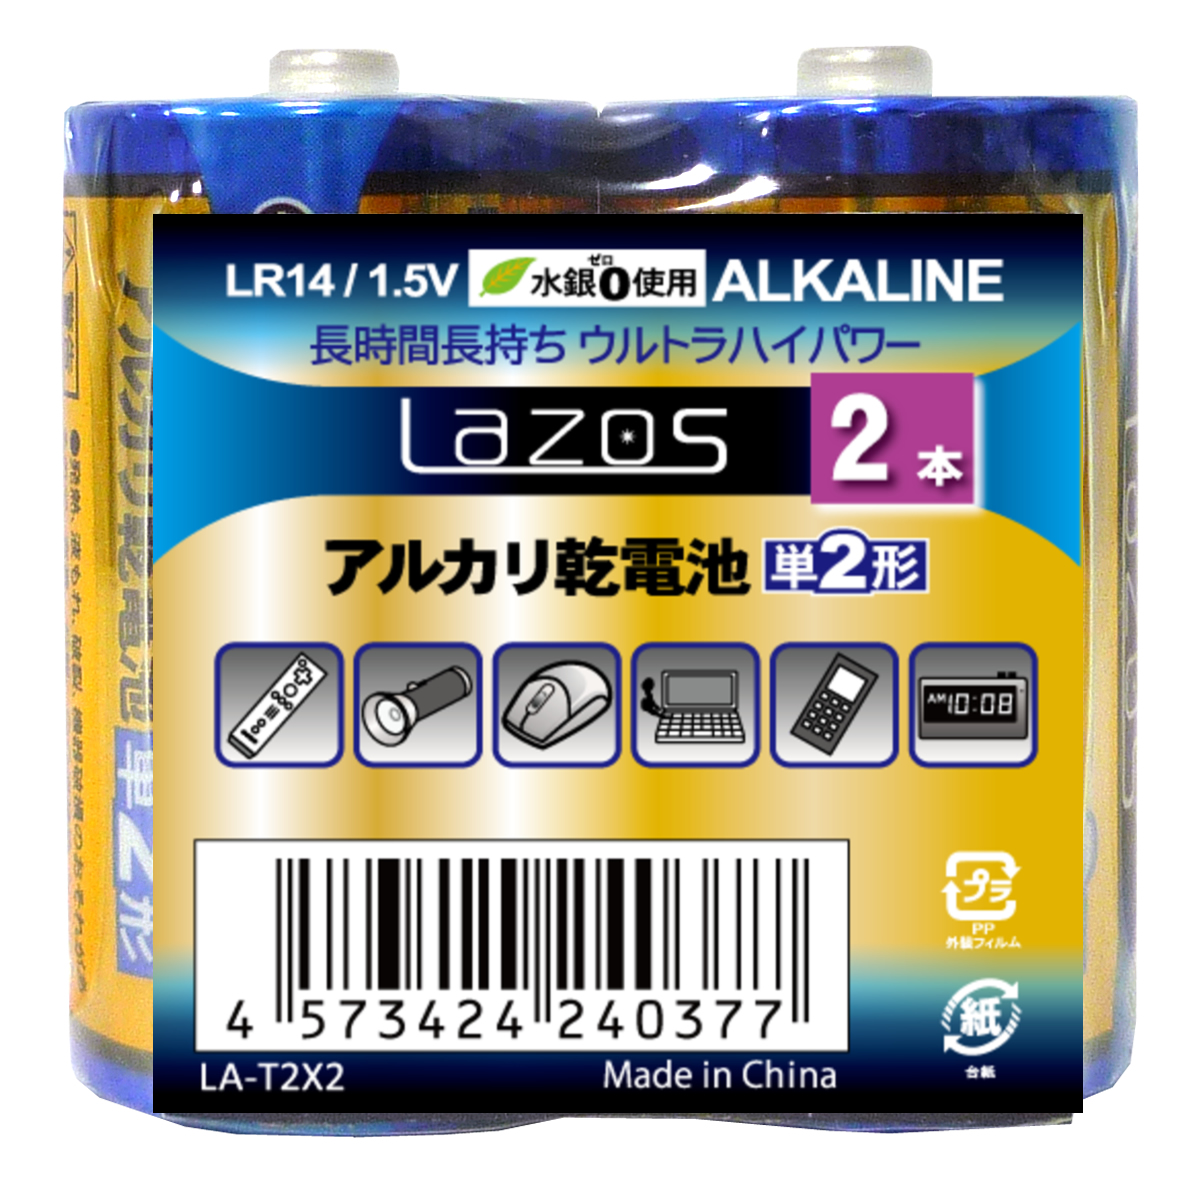 期間限定ポイント消化にも 公式 送料込 乾電池 アルカリ LAZOS 2本セット 誕生日プレゼント 単2 単二